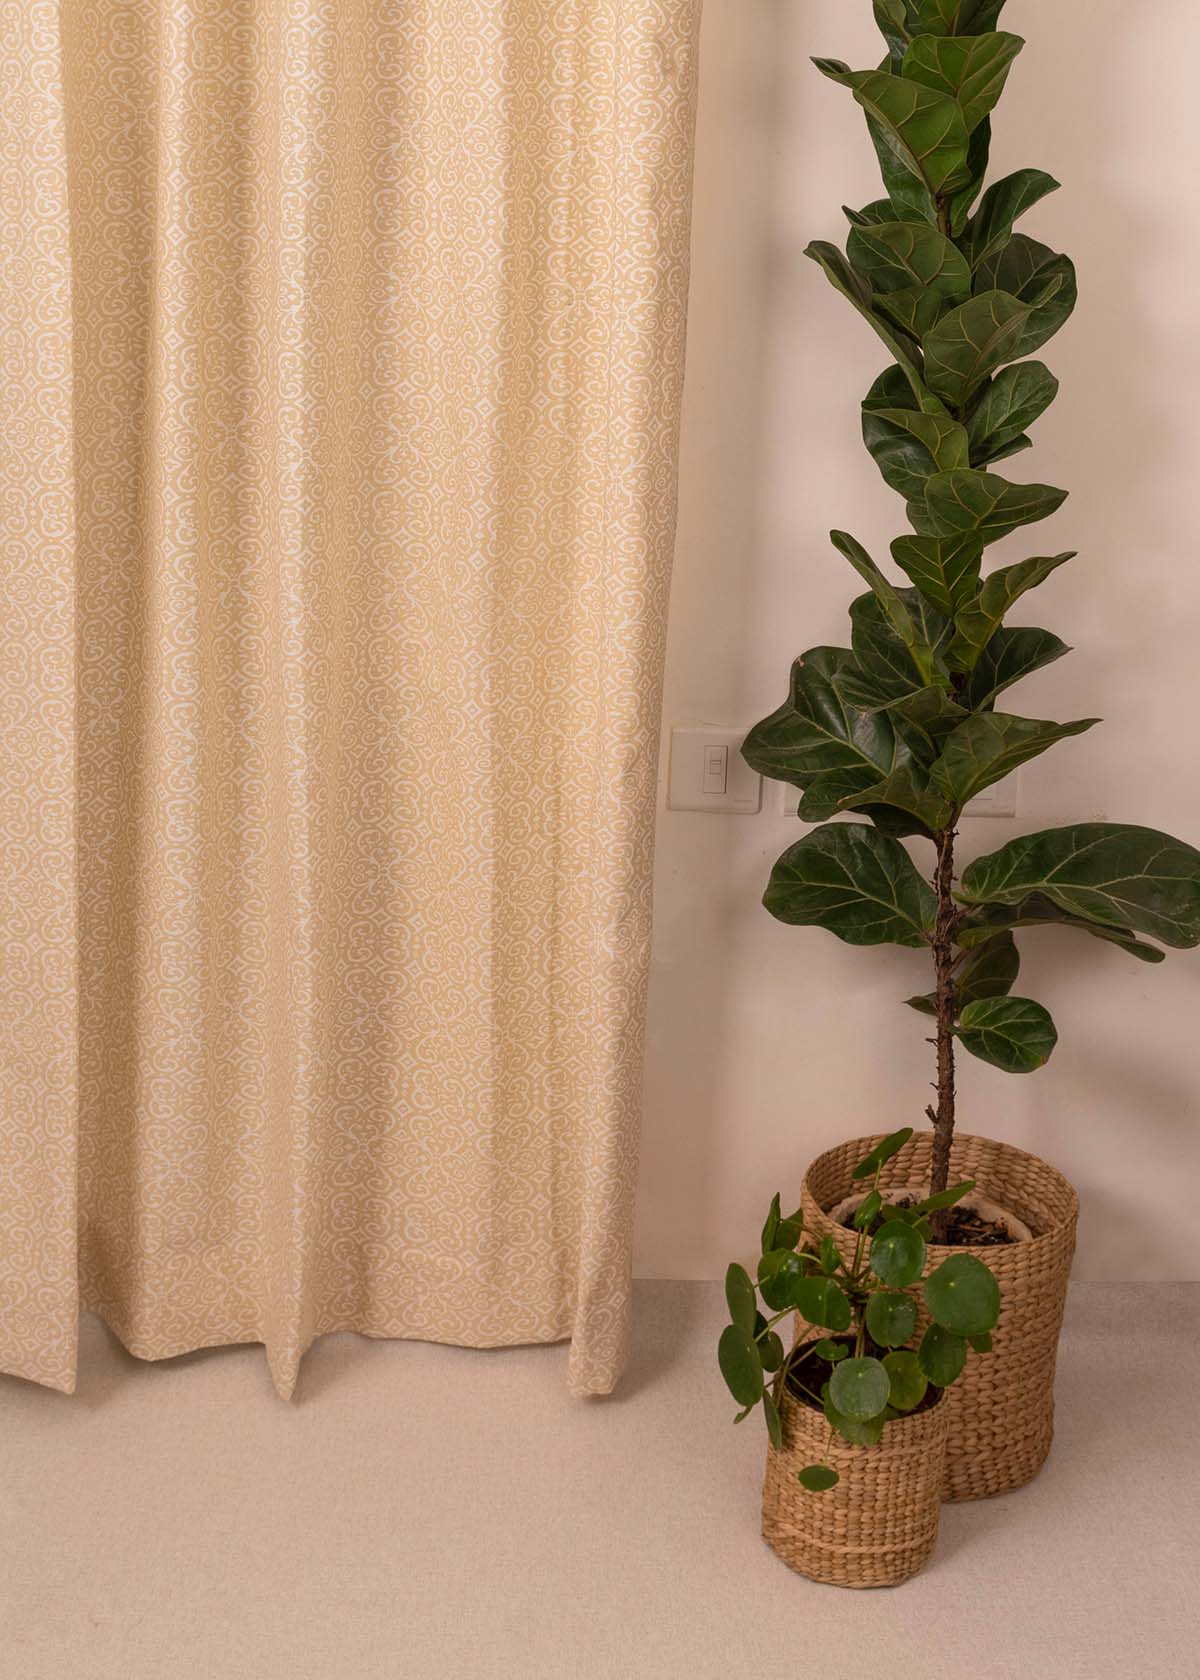 Antique Rose 100% cotton minimal curtain for living room - Room darkening - Cream - Pack of 1